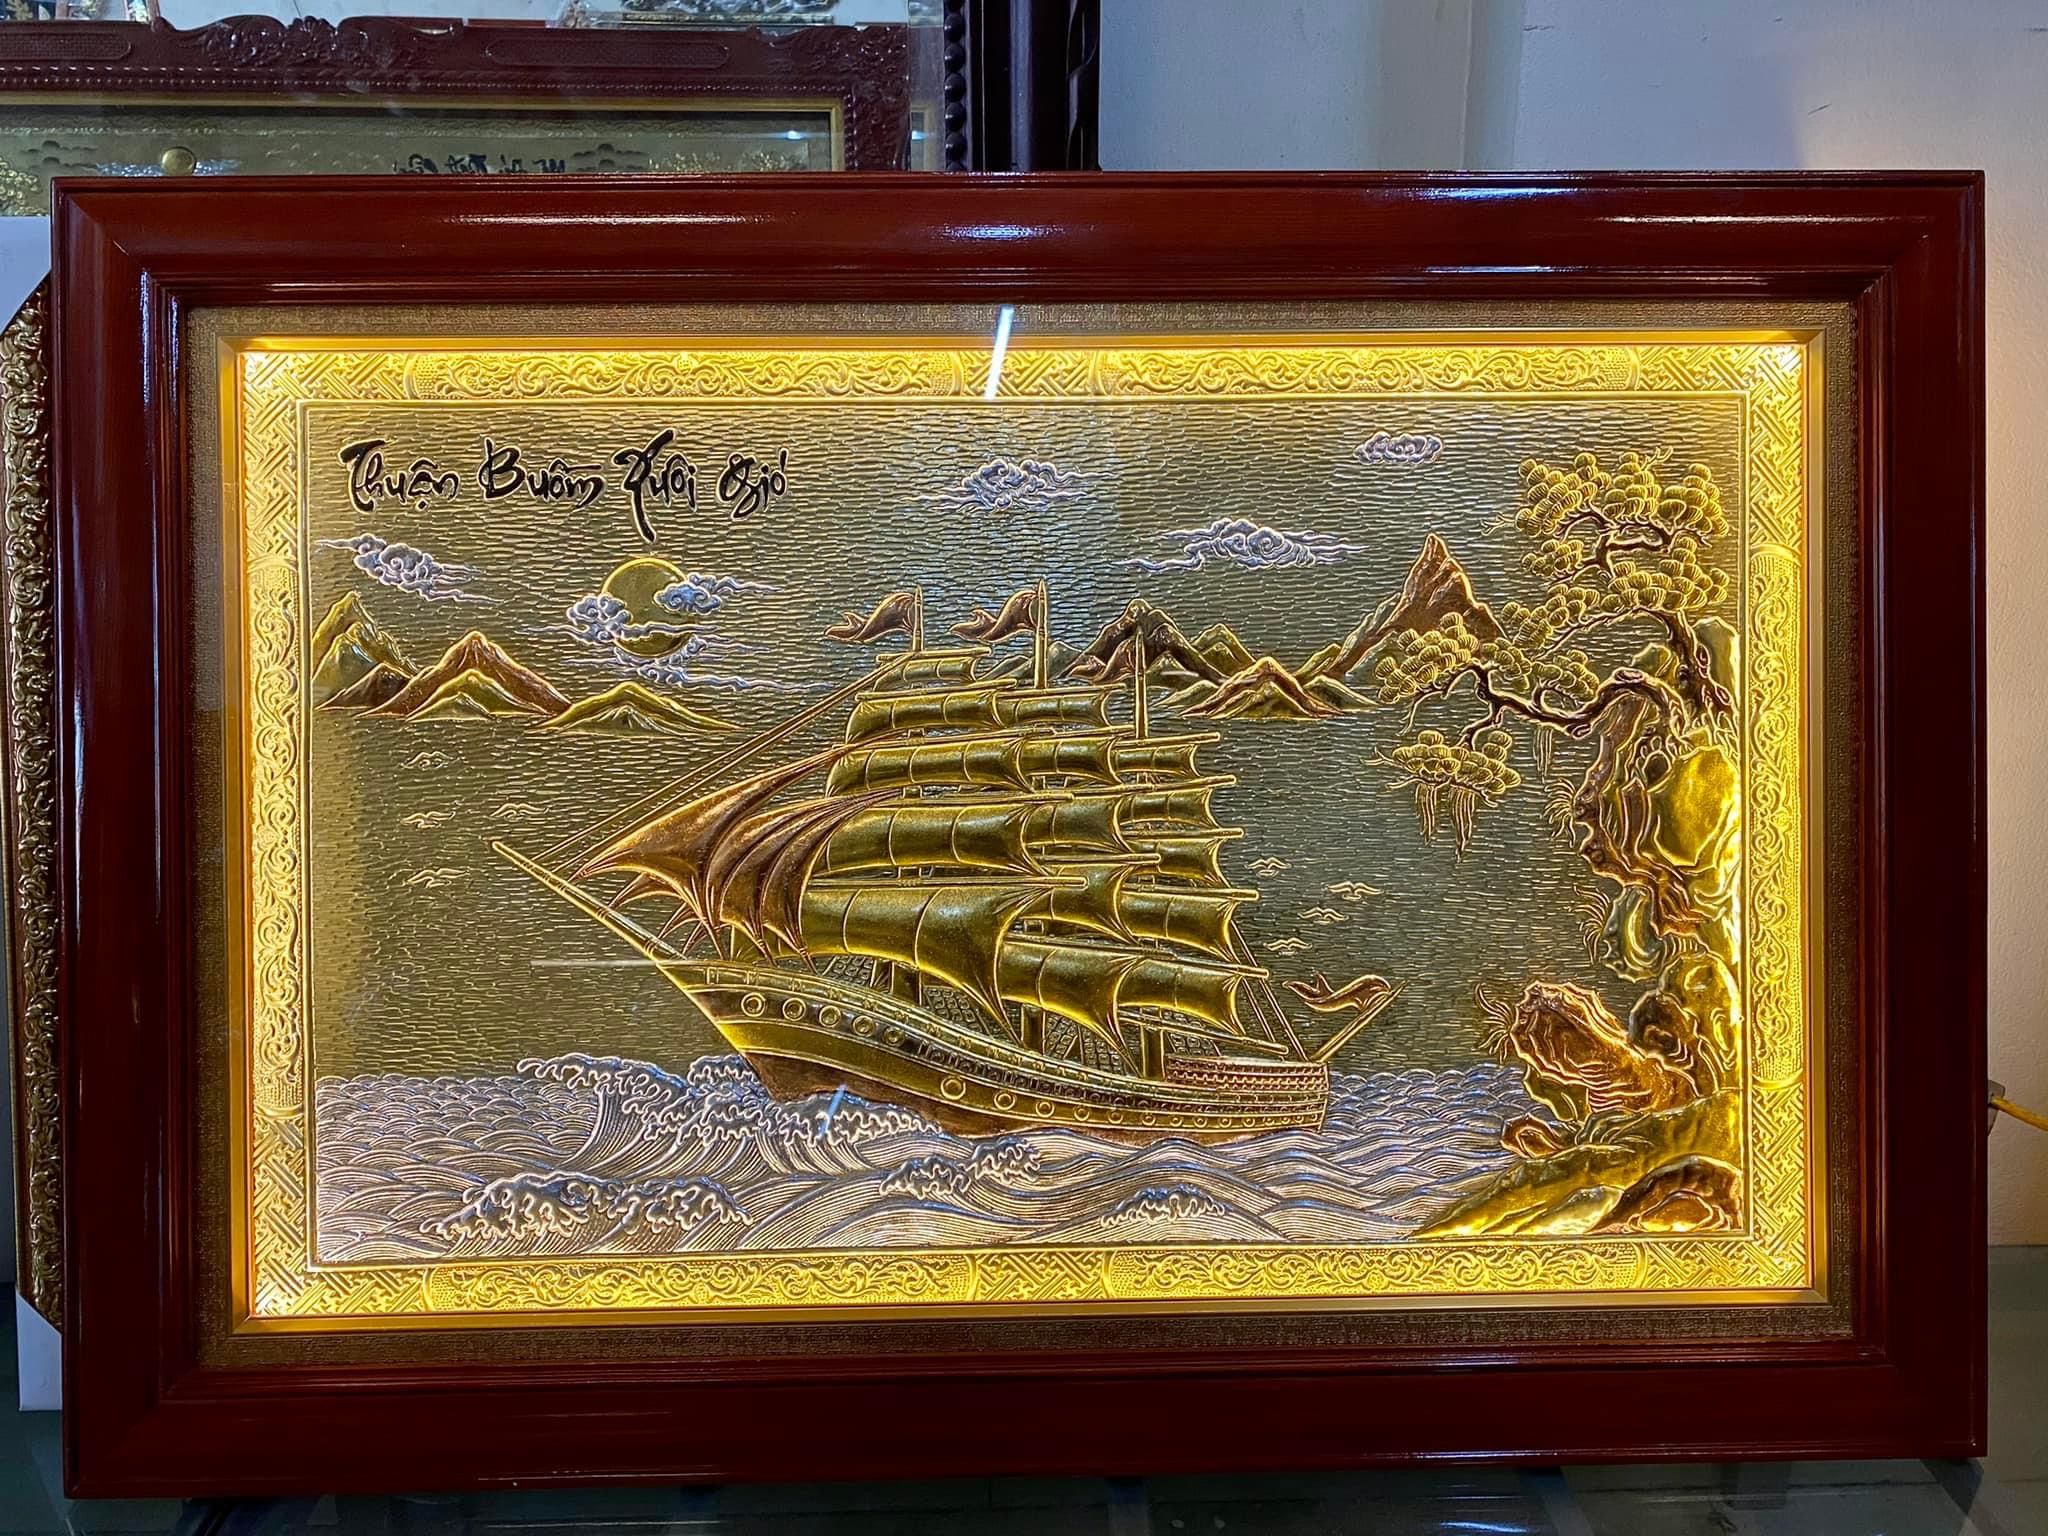 Tranh Thuận Buồm xuôi gió 75*110cm bằng đồng dát vàng bạc